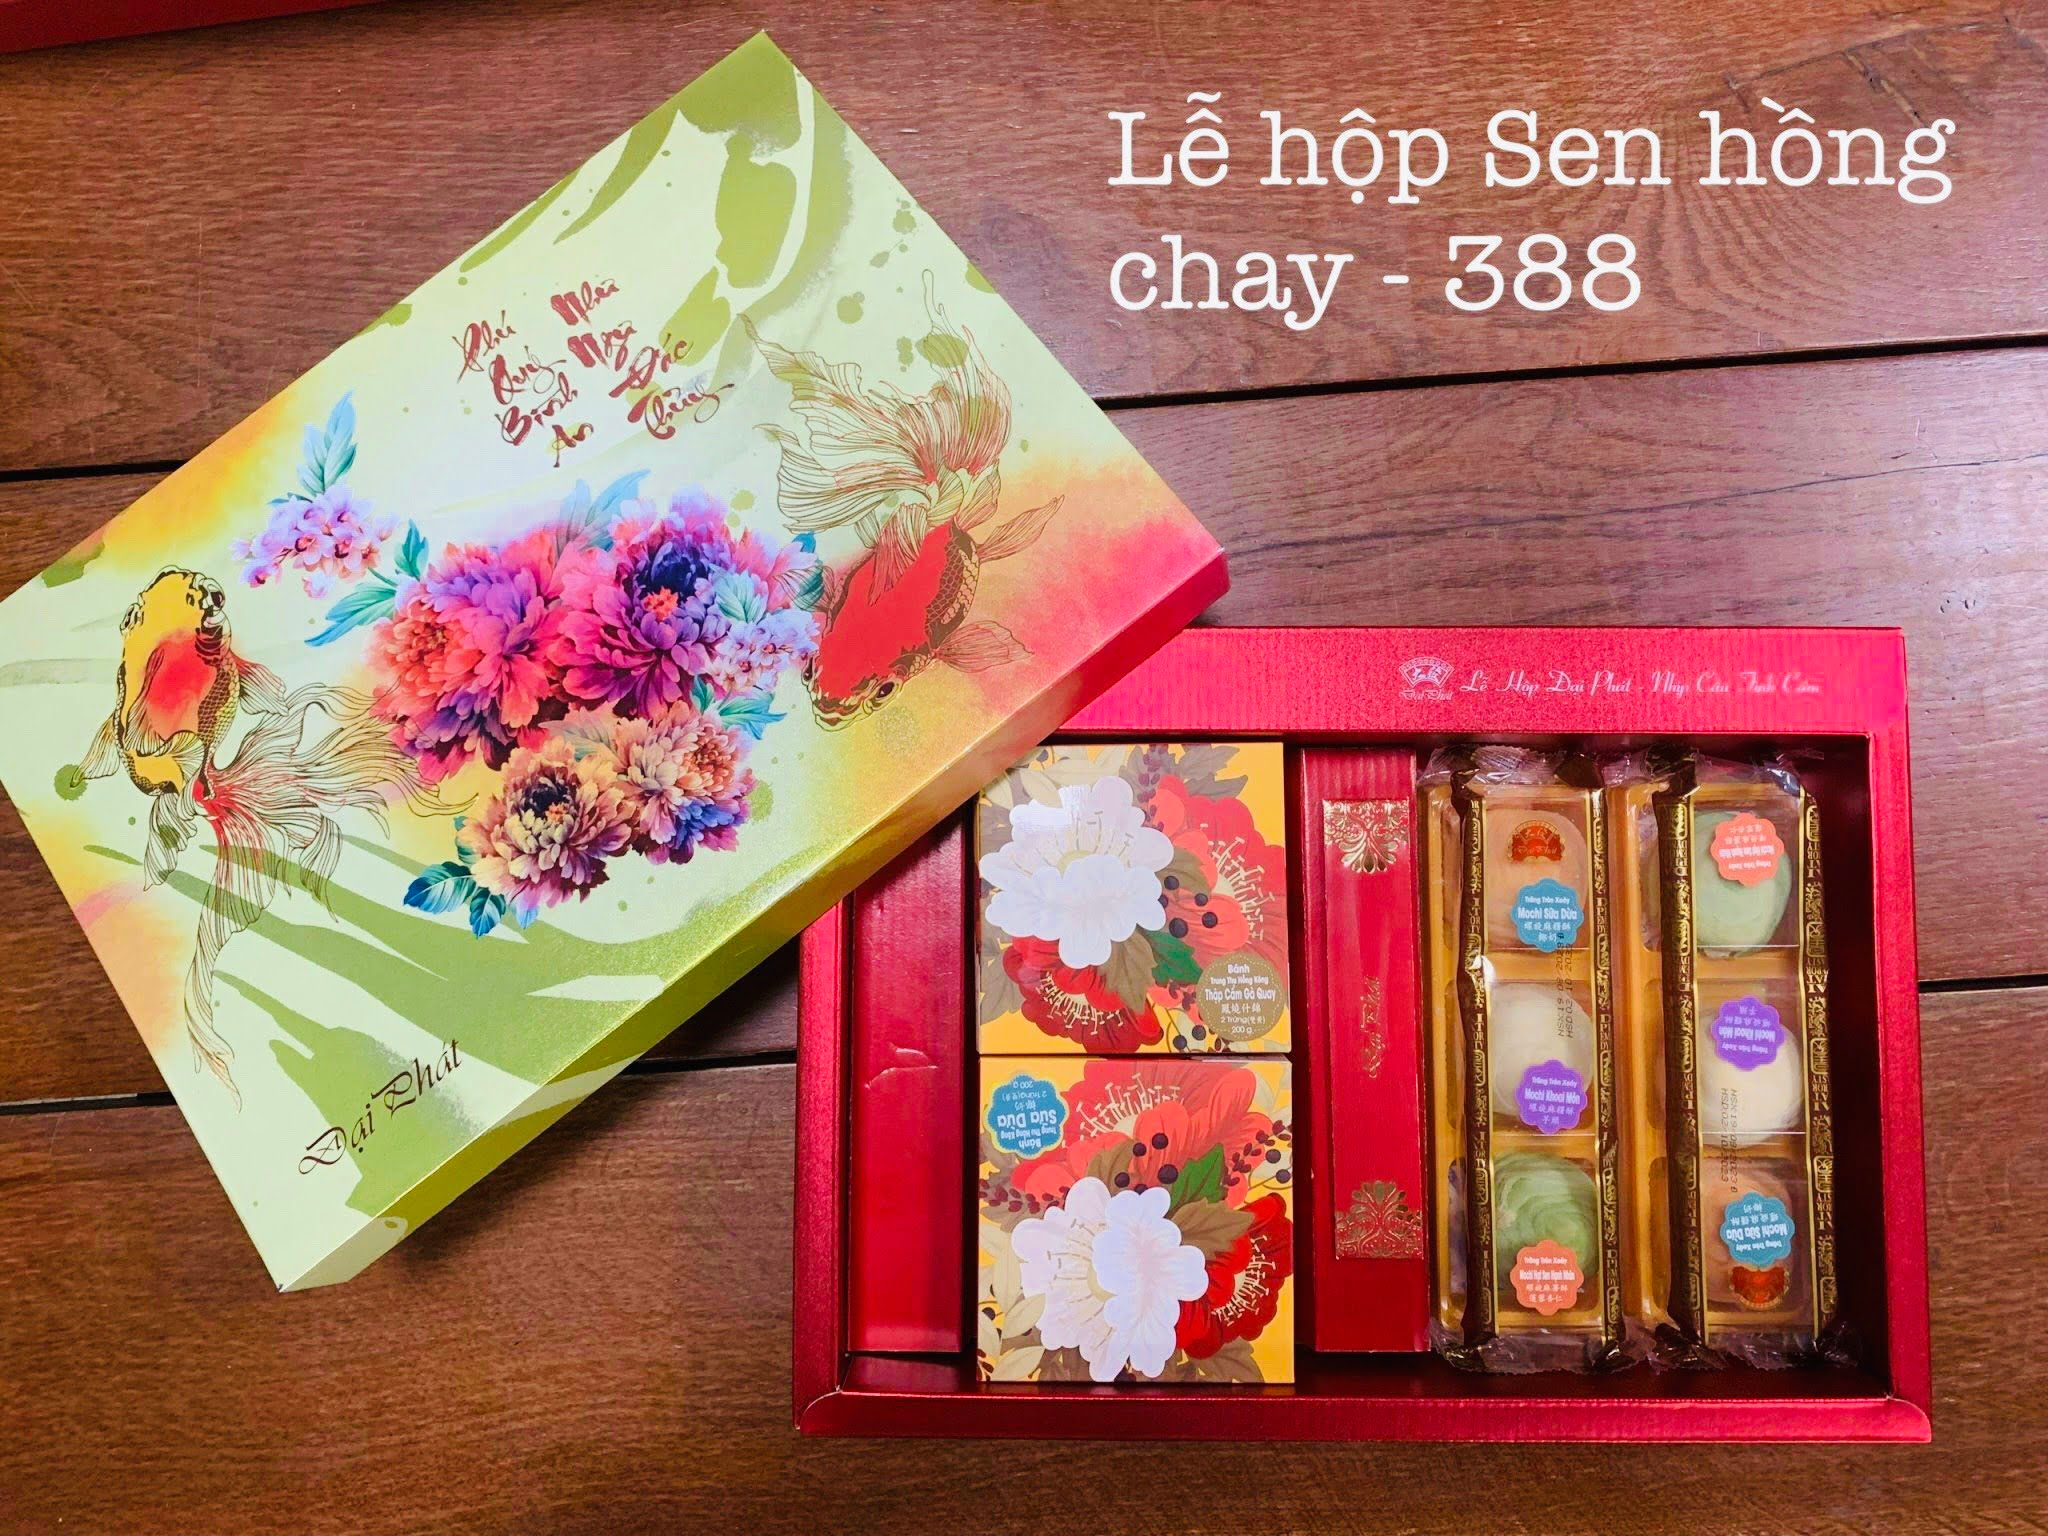 Bang Gia Banh Trung Thu Dai Phat Le Hop Chay